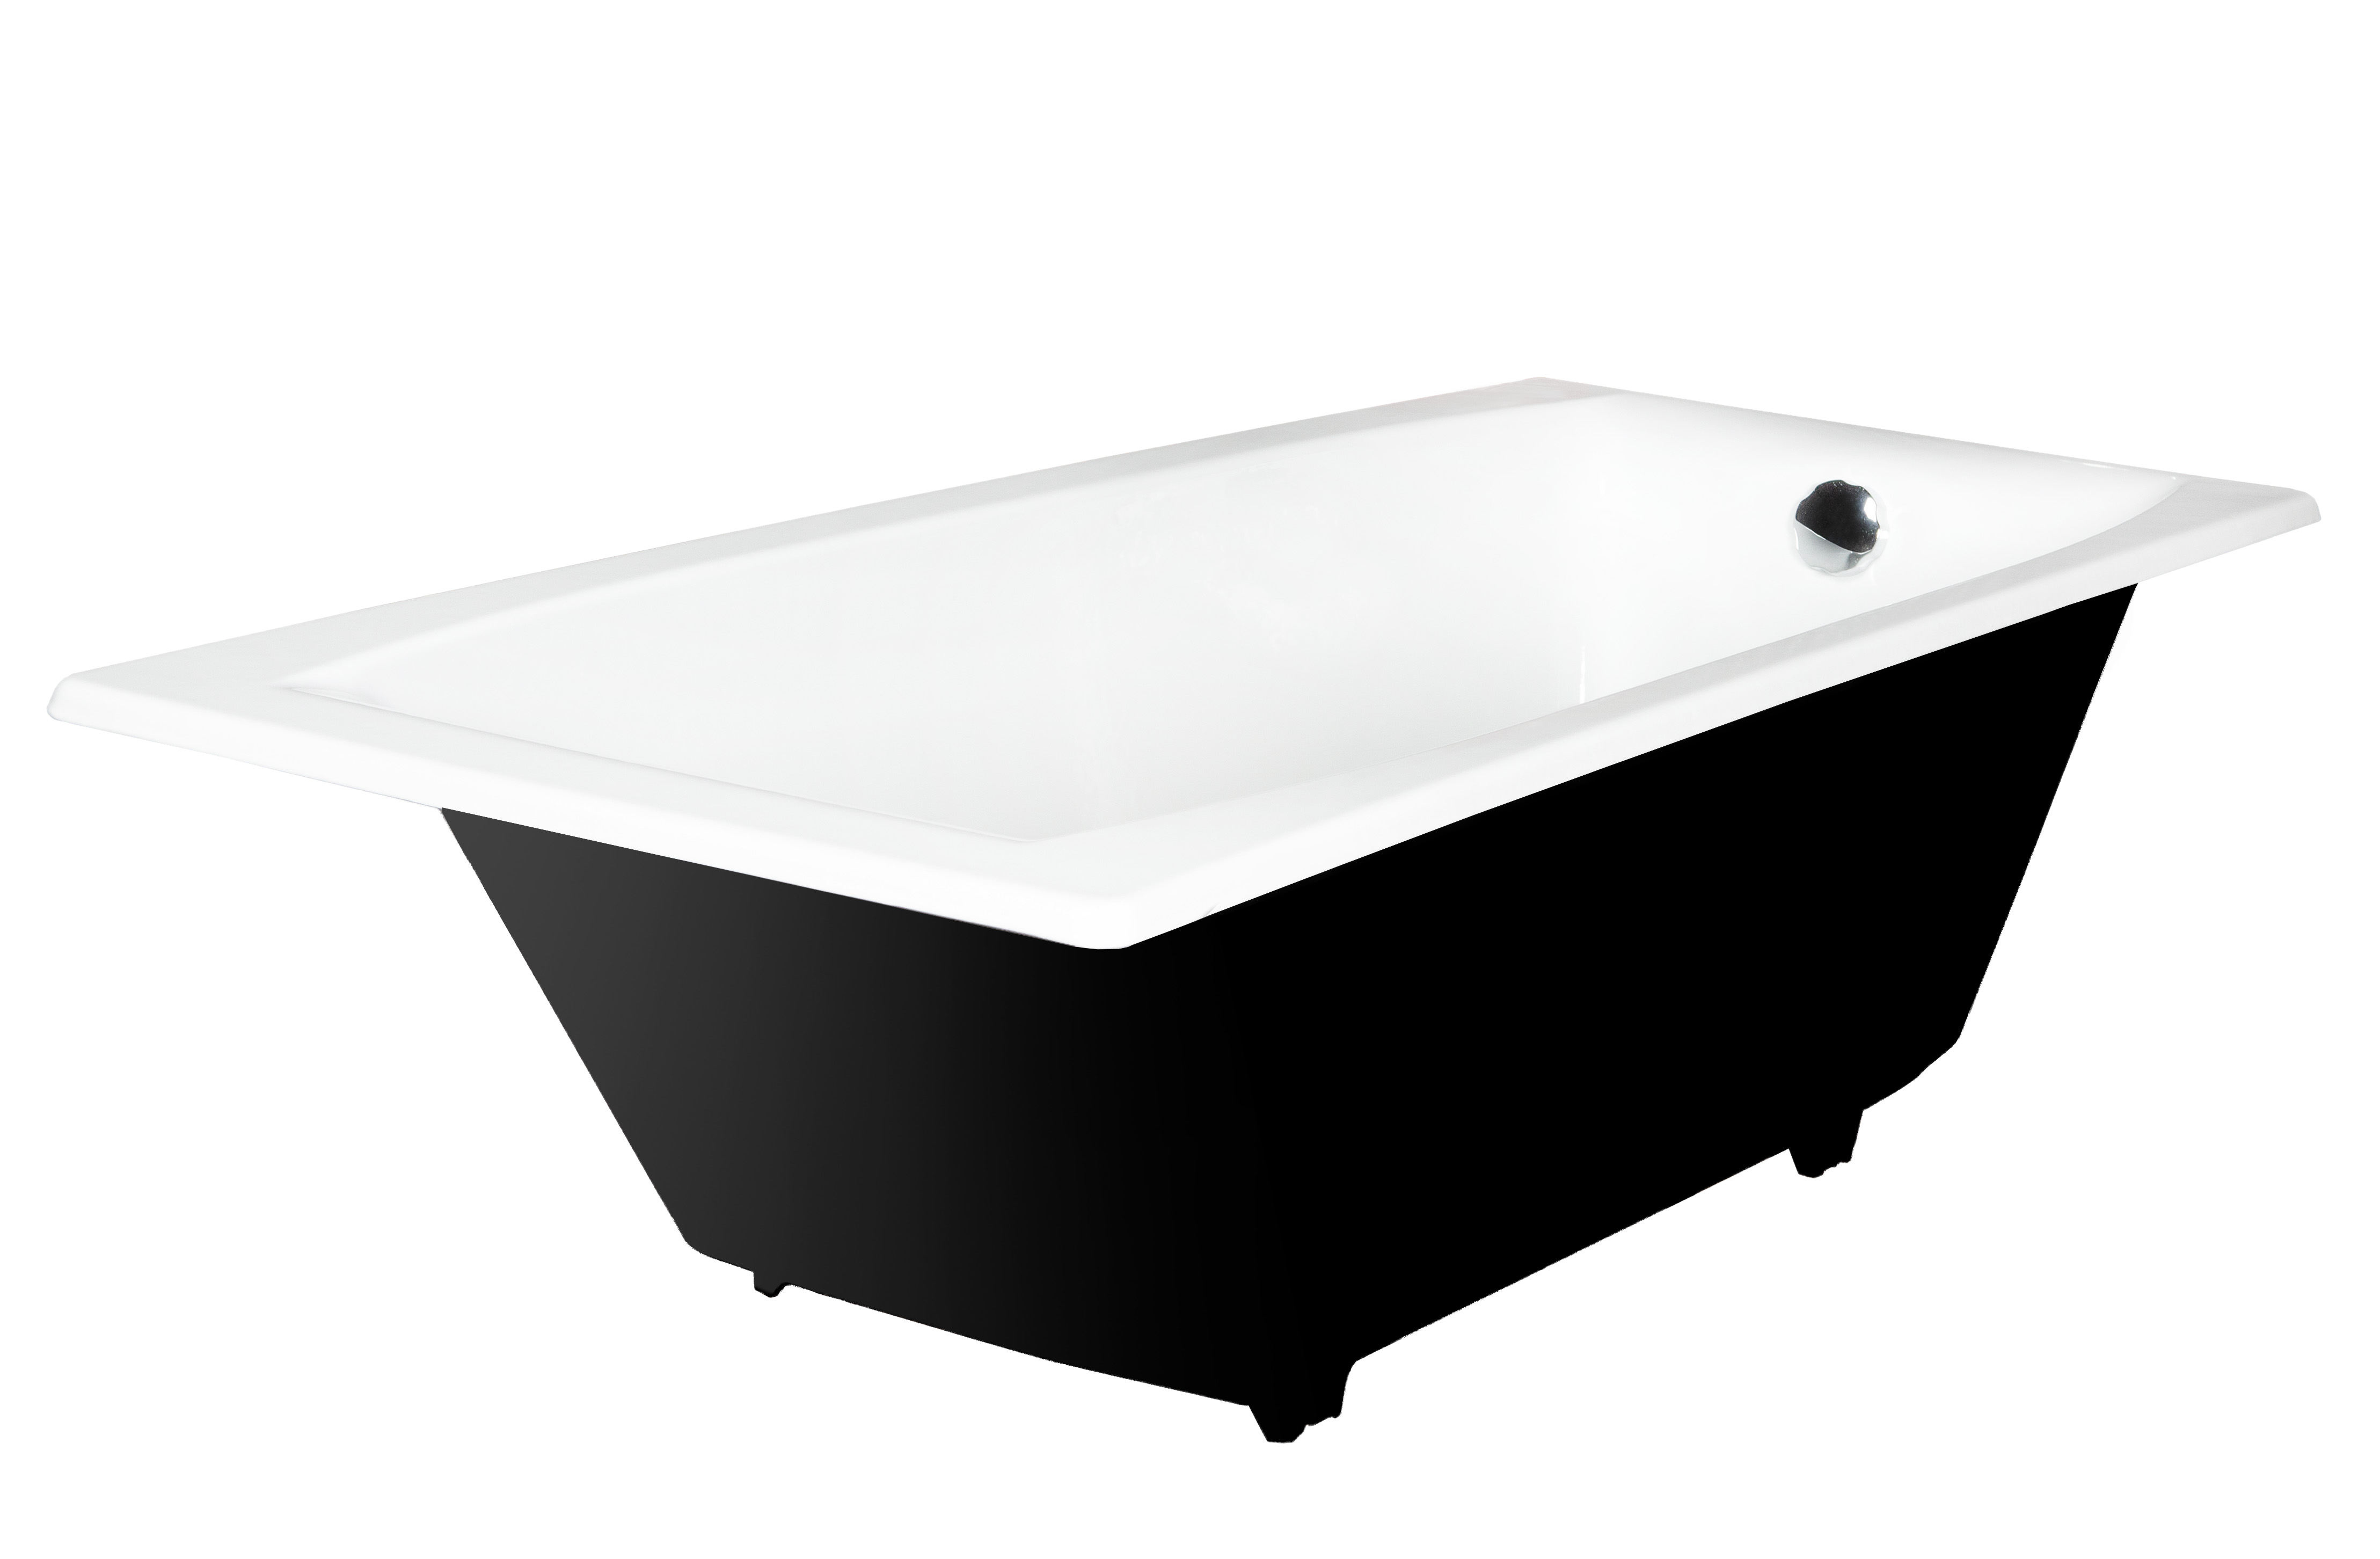 Чугунная ванна Wotte 170х70 см Forma 1700х700 белая